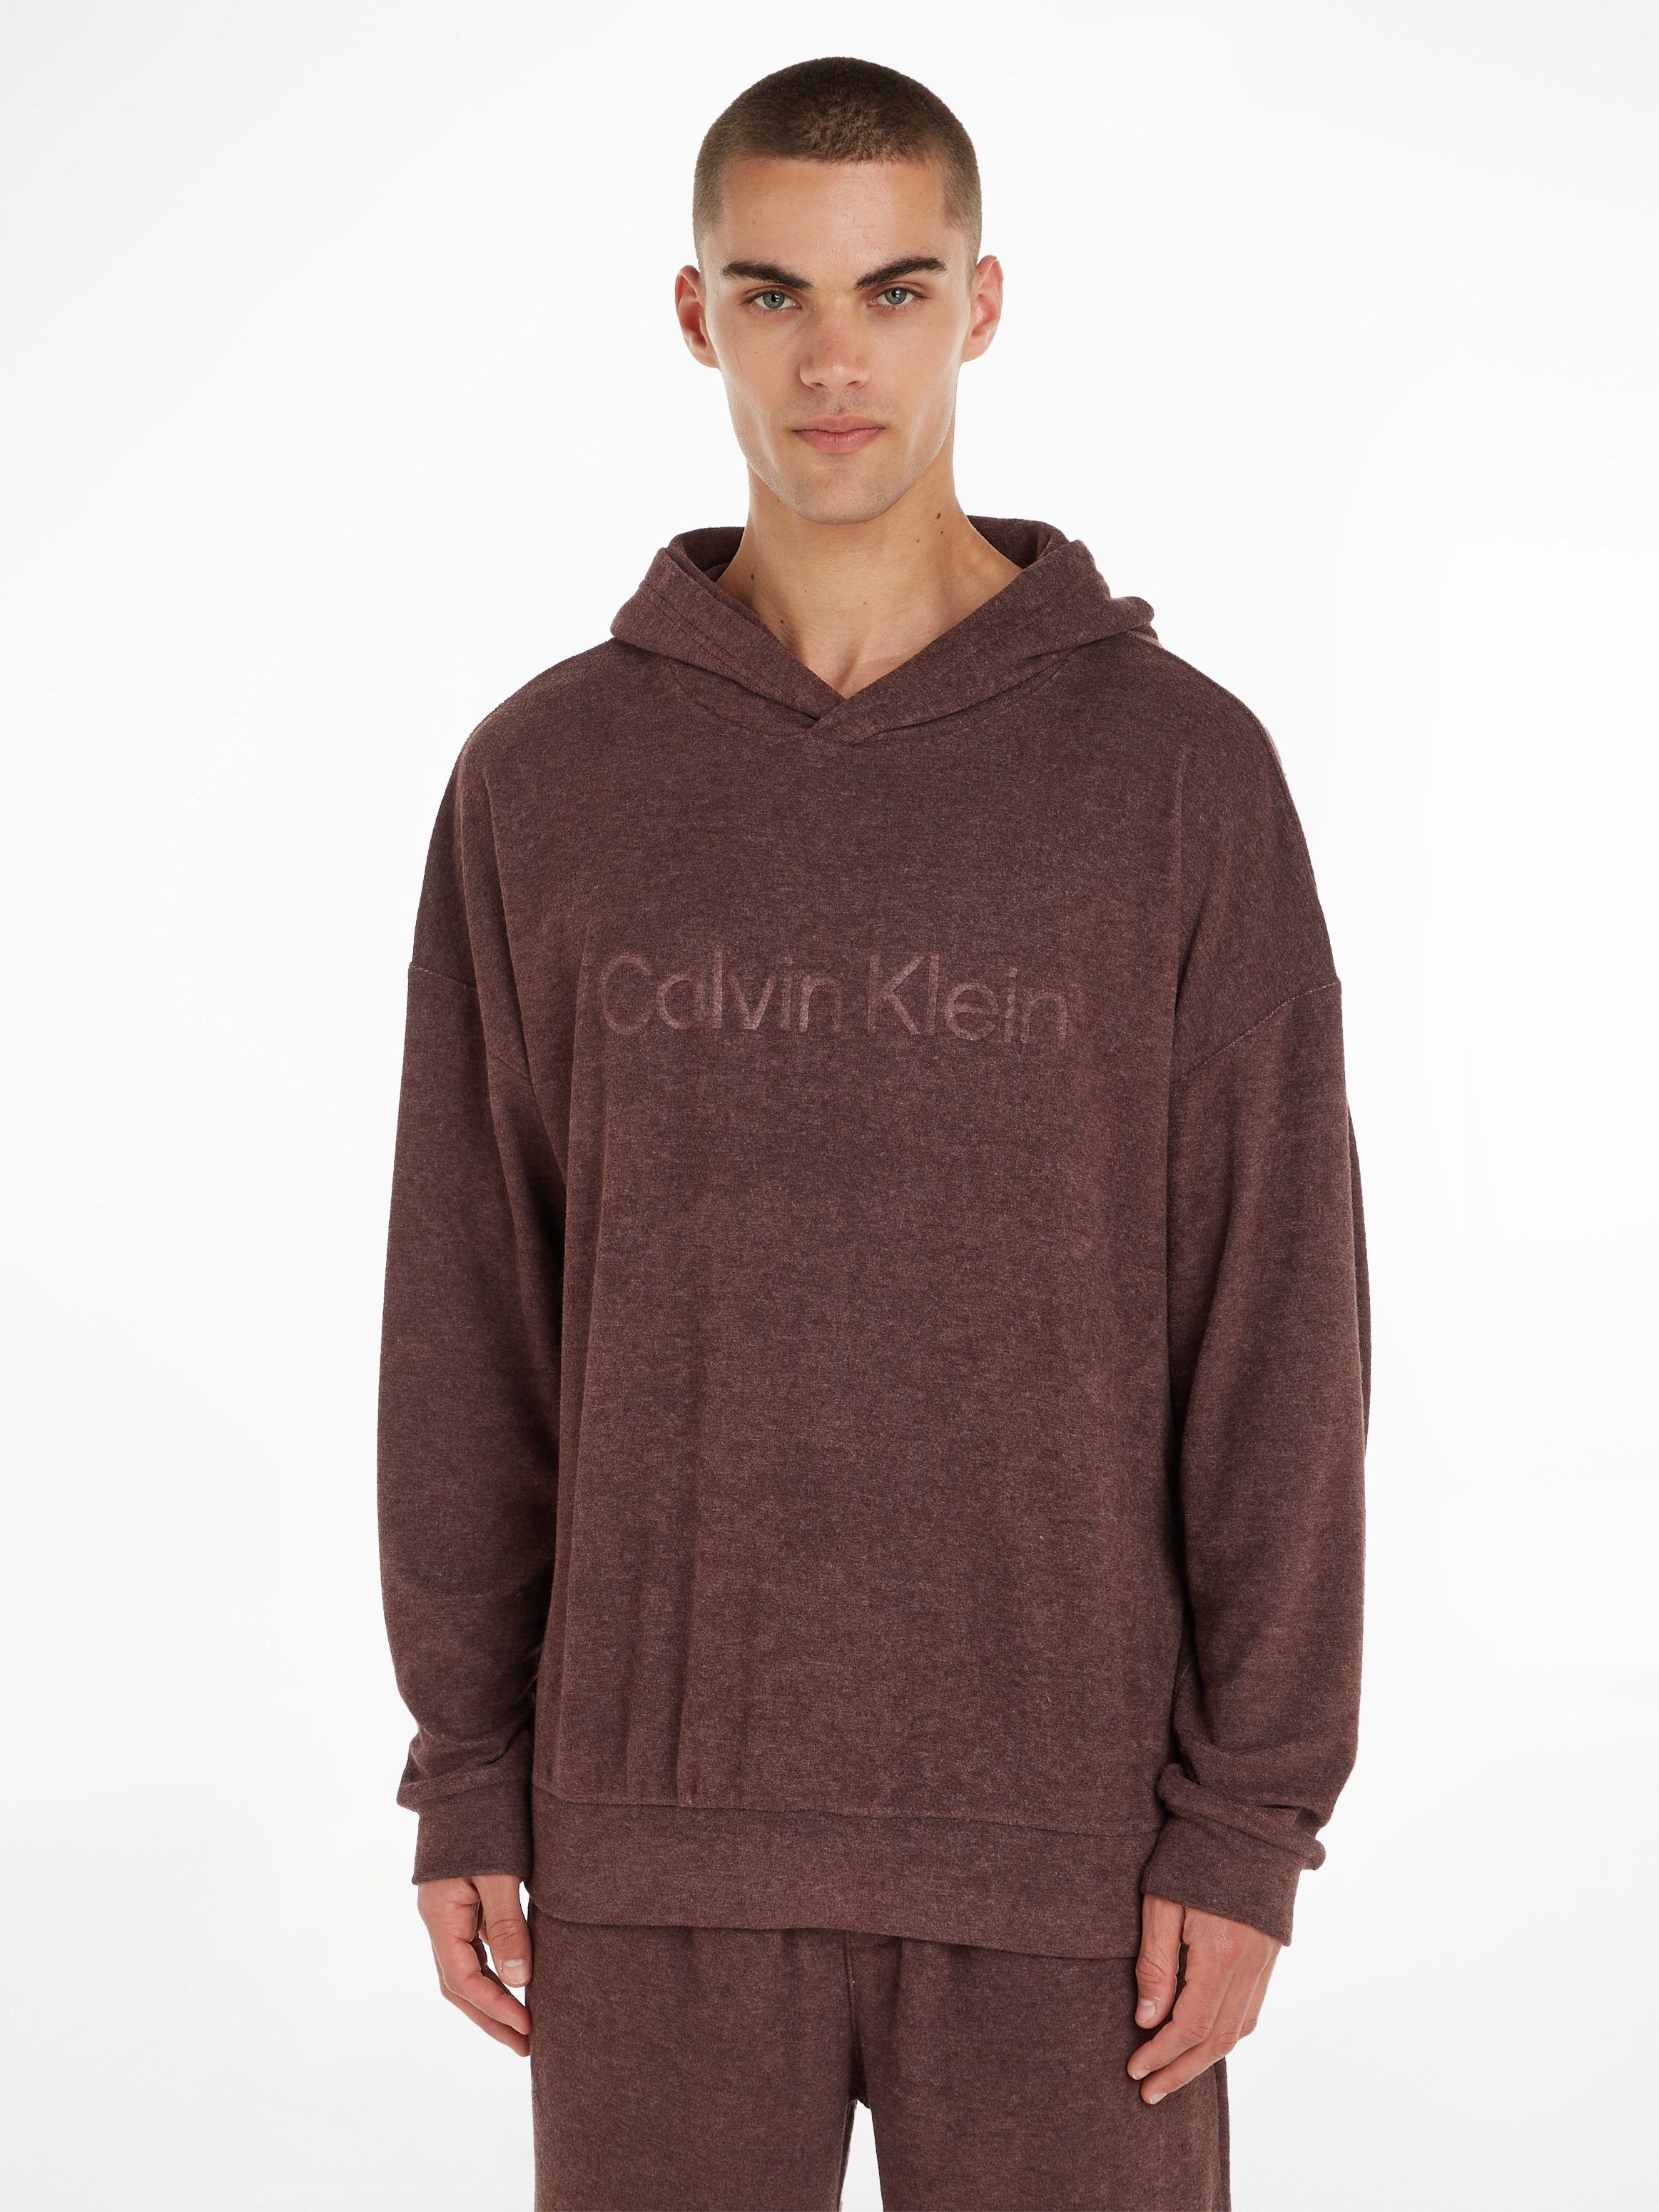 Calvin Klein Underwear HOODIE Brust L/S mit Schriftzug Sweatshirt der auf